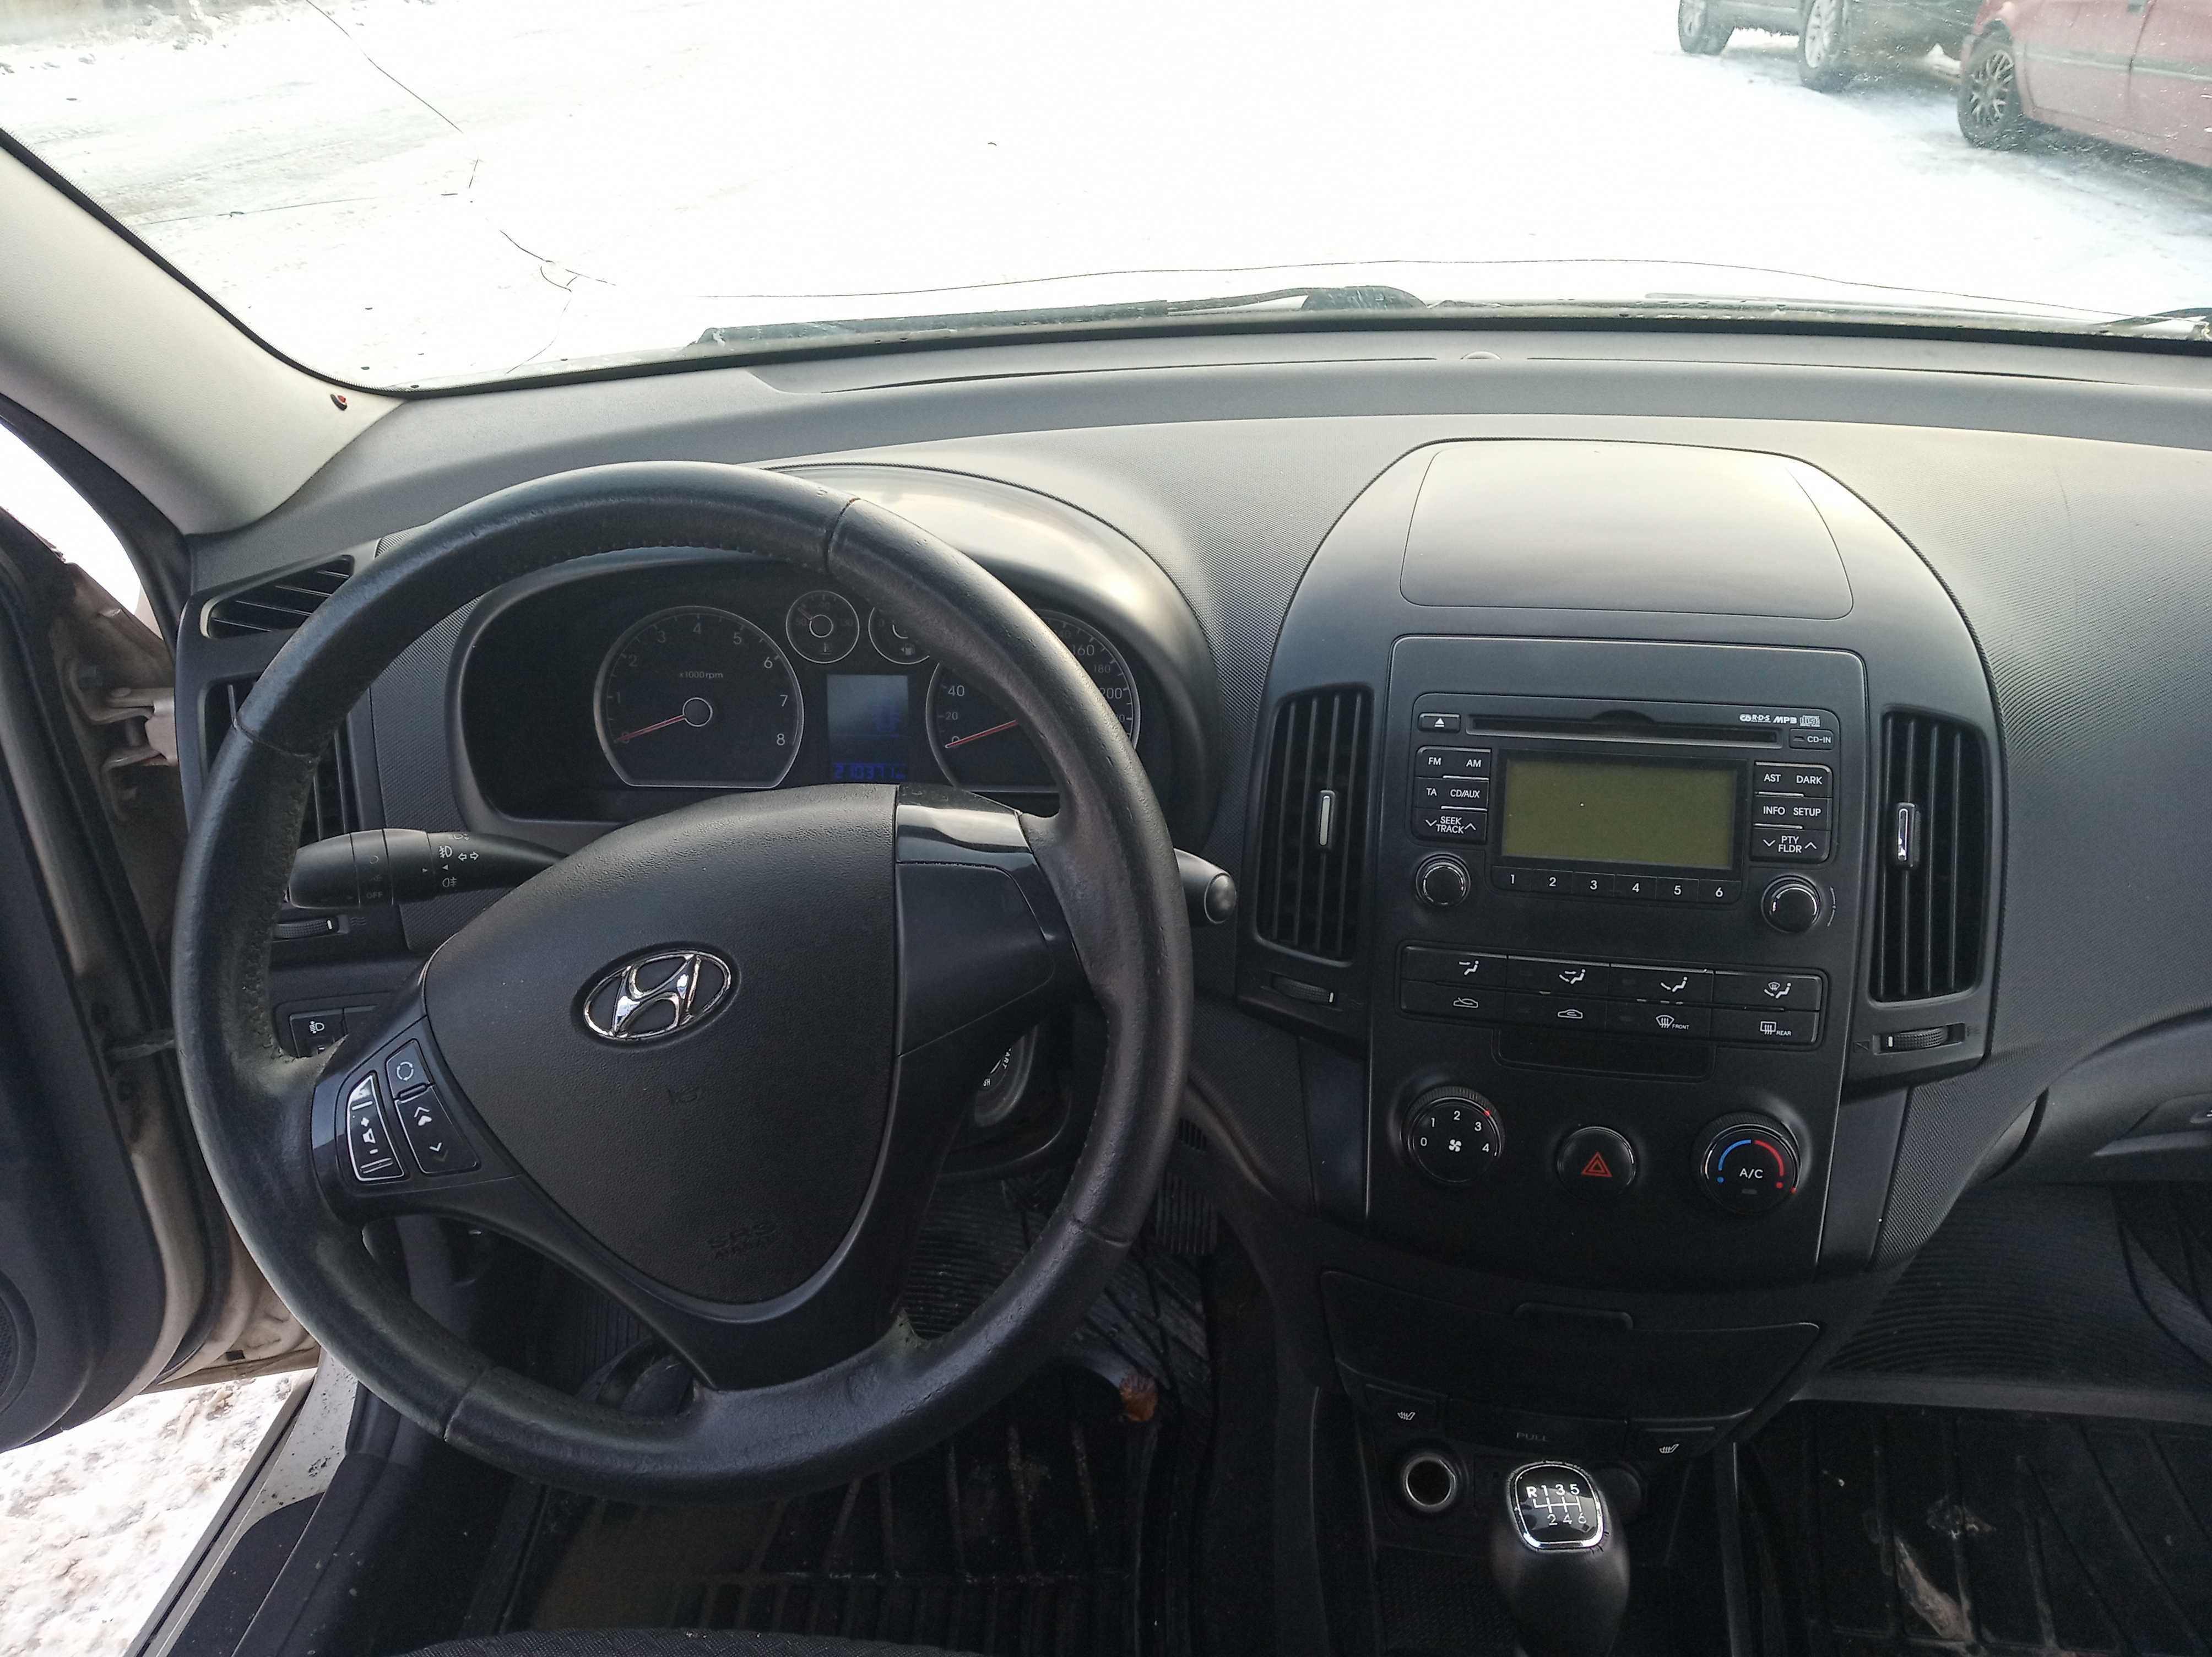 Недорого! Hyundai i30, 2011г, 1-ый хозяин; 1,6л газ